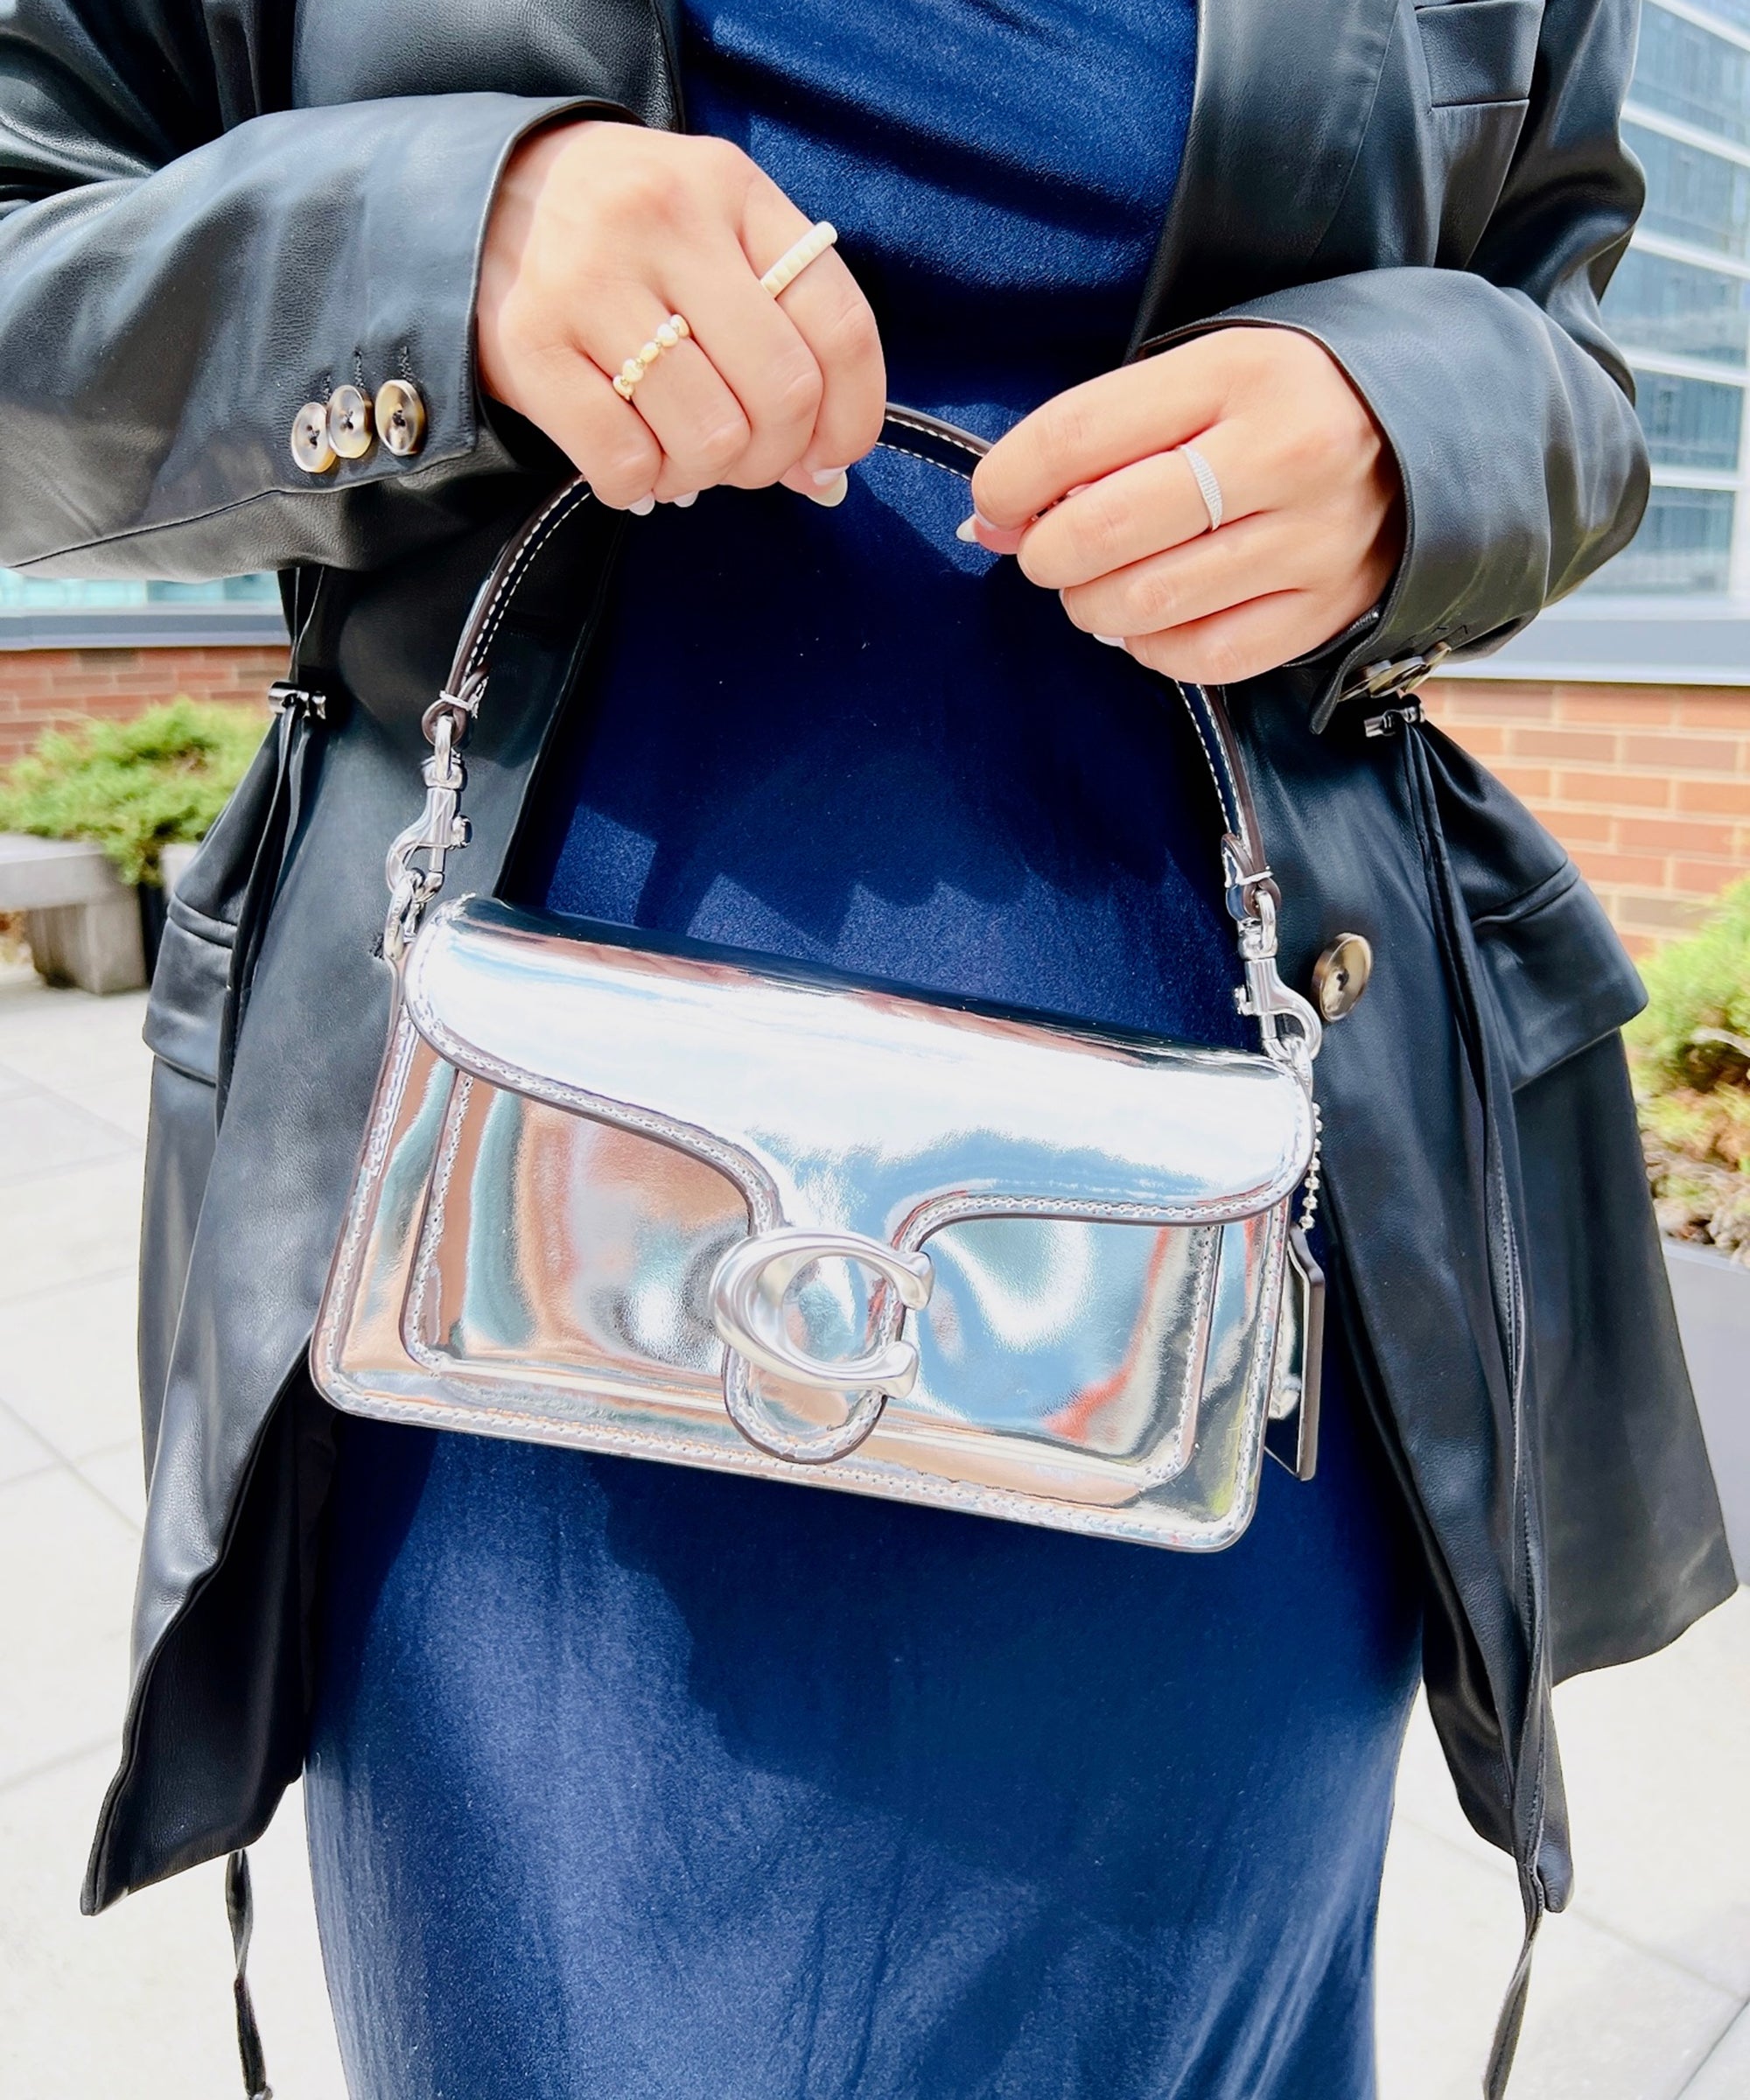 Coach Mini Wallet On A Chain  Mini bag outfit, Cute laptop bags, Coach